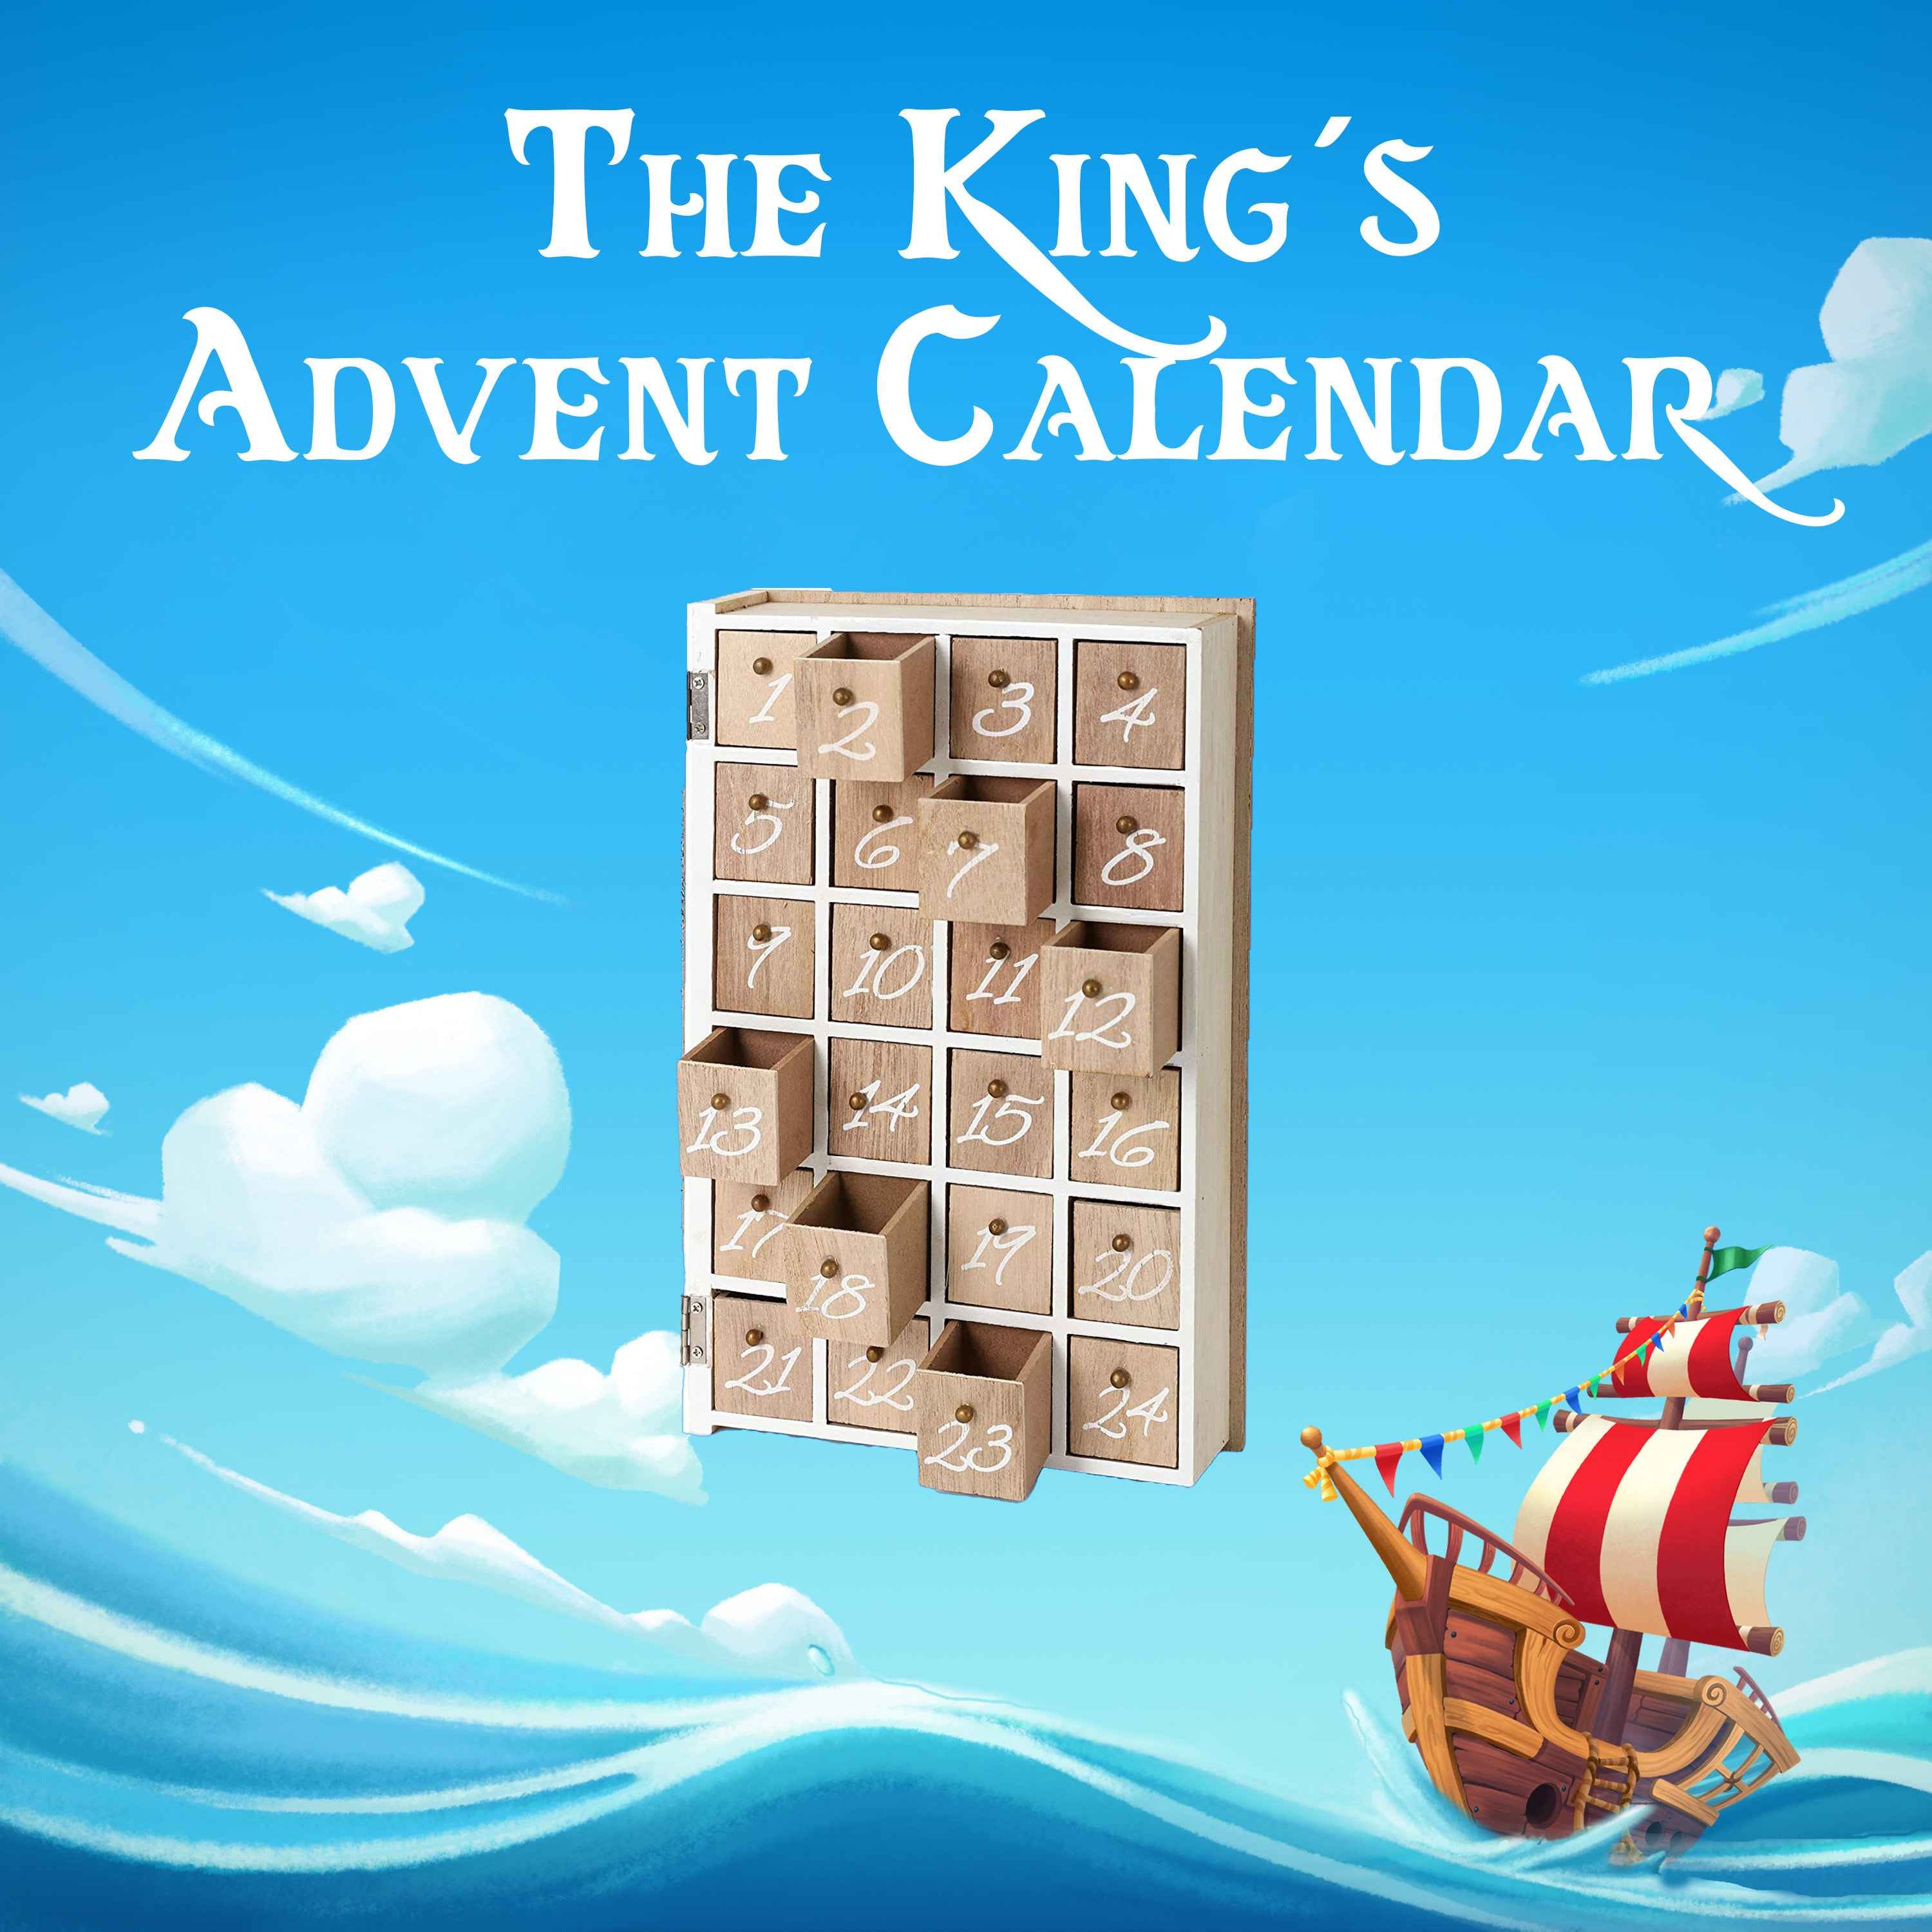 The King’s Advent Calendar